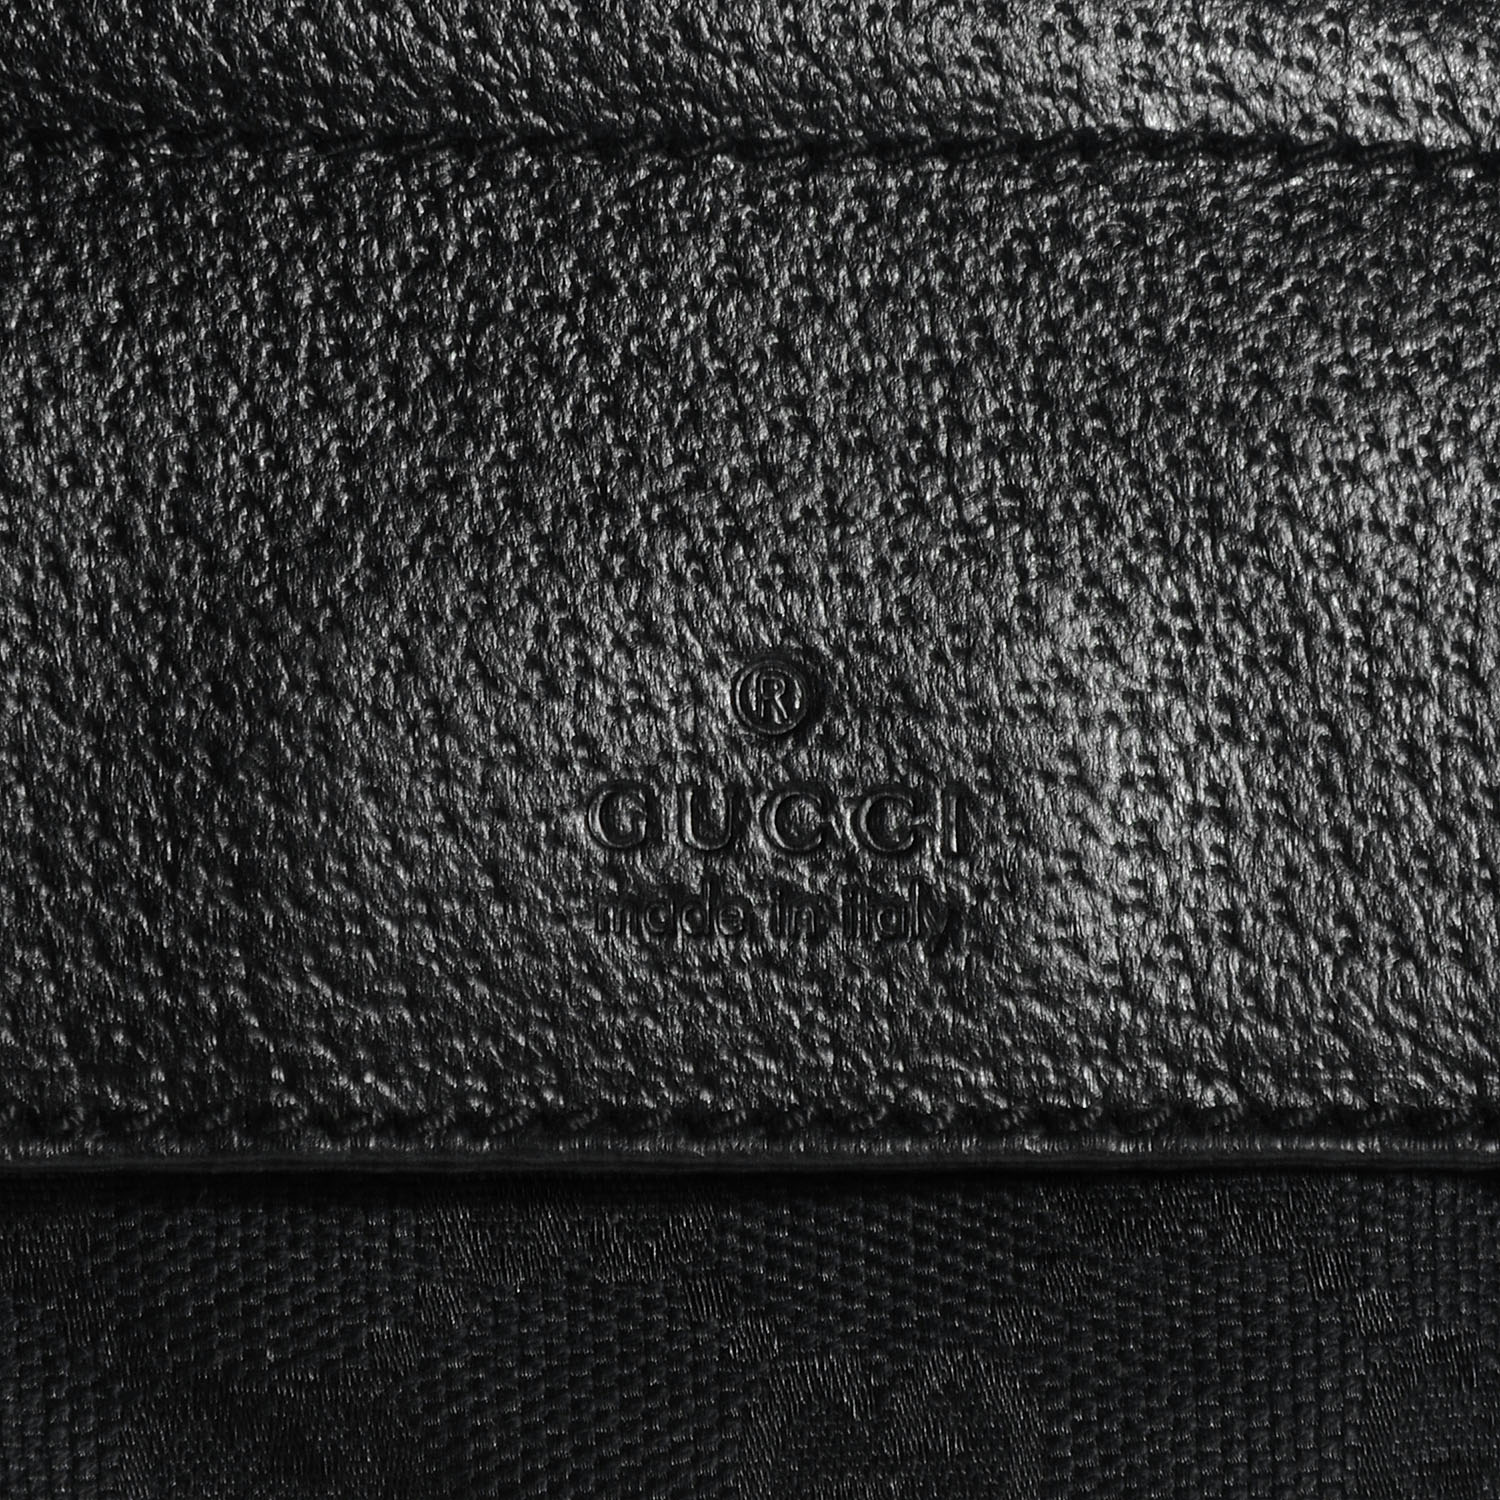 GUCCI Monogram GG Fanny Pack Belt Bag Black 59661